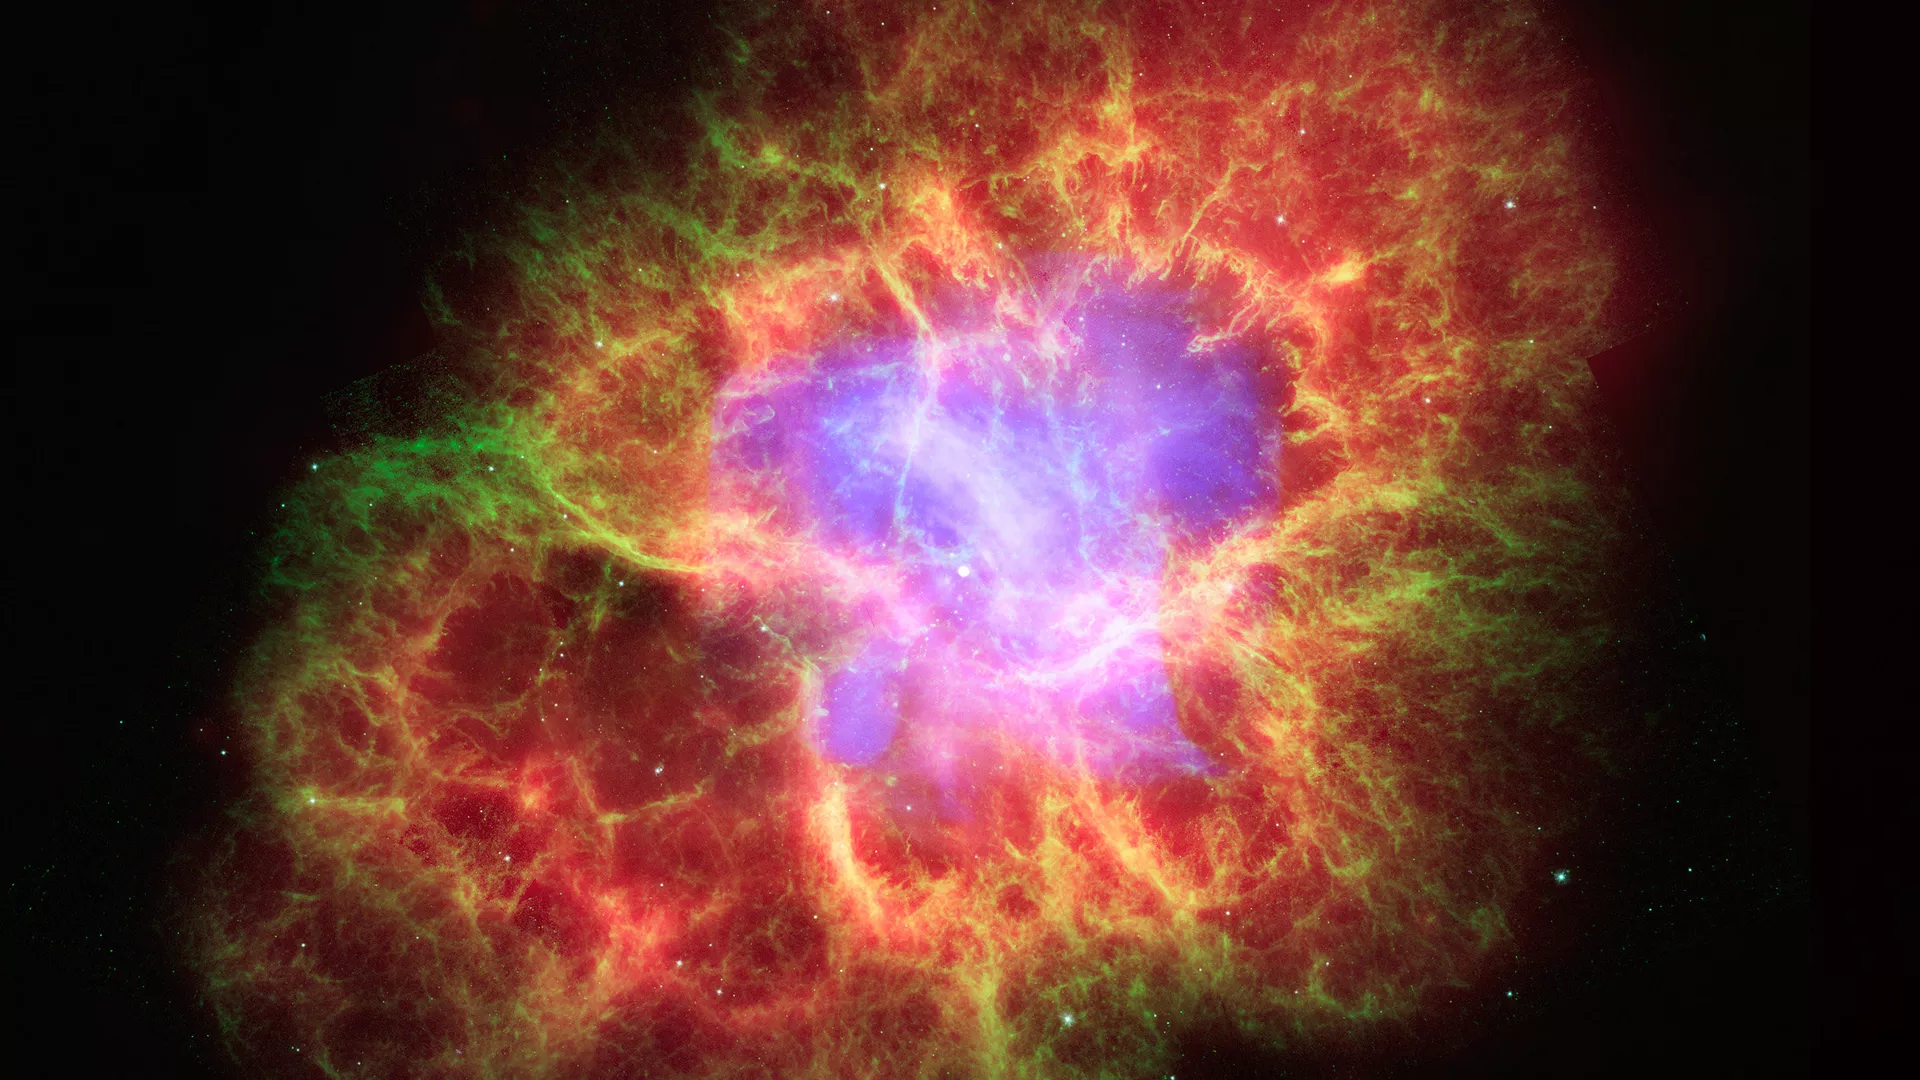  Captan el increíble estado de una estrella apenas horas después de su explosión | Foto